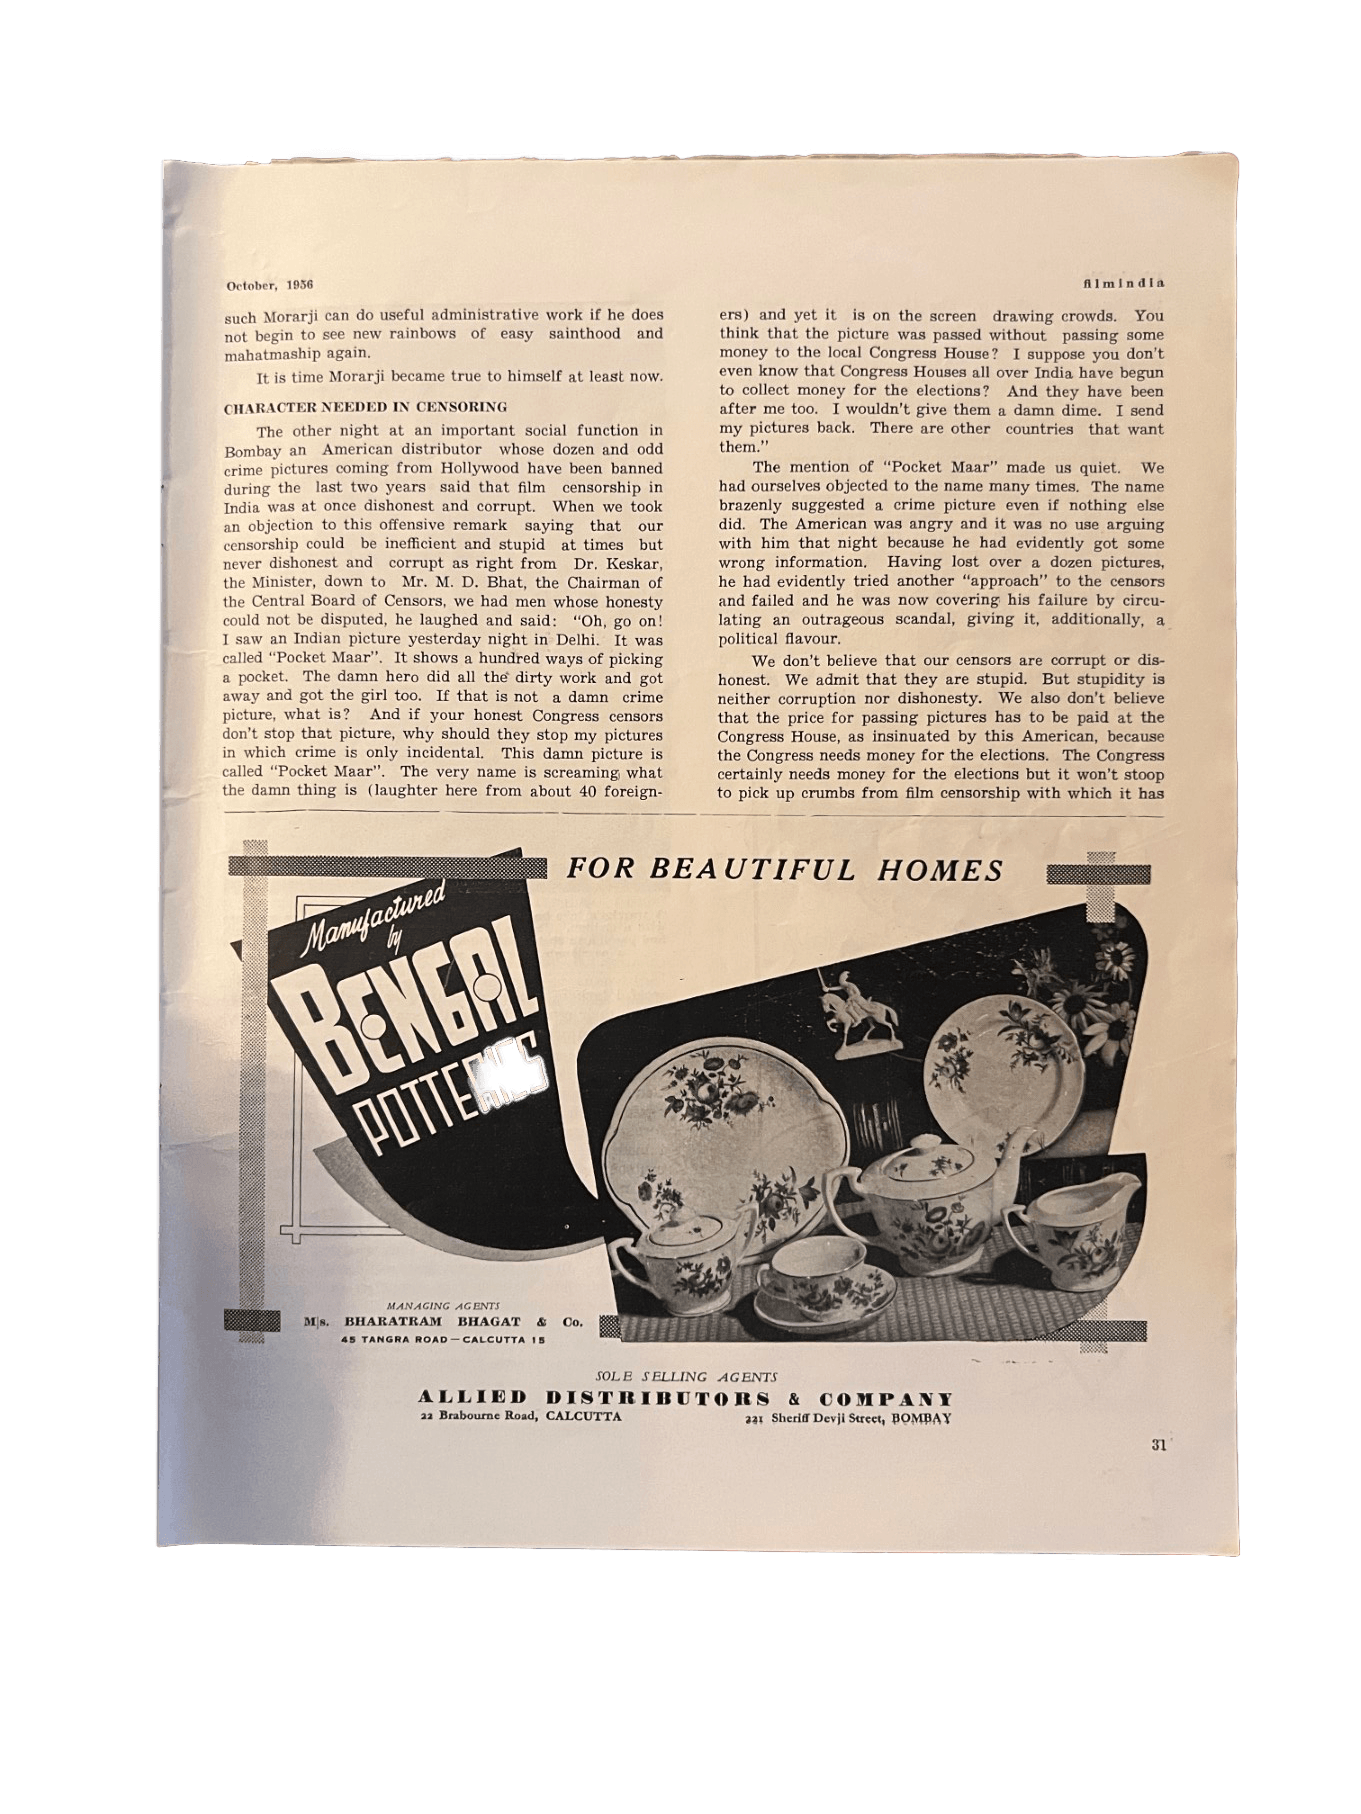 1950s Filmindia | 29 issues - KHAJISTAN™